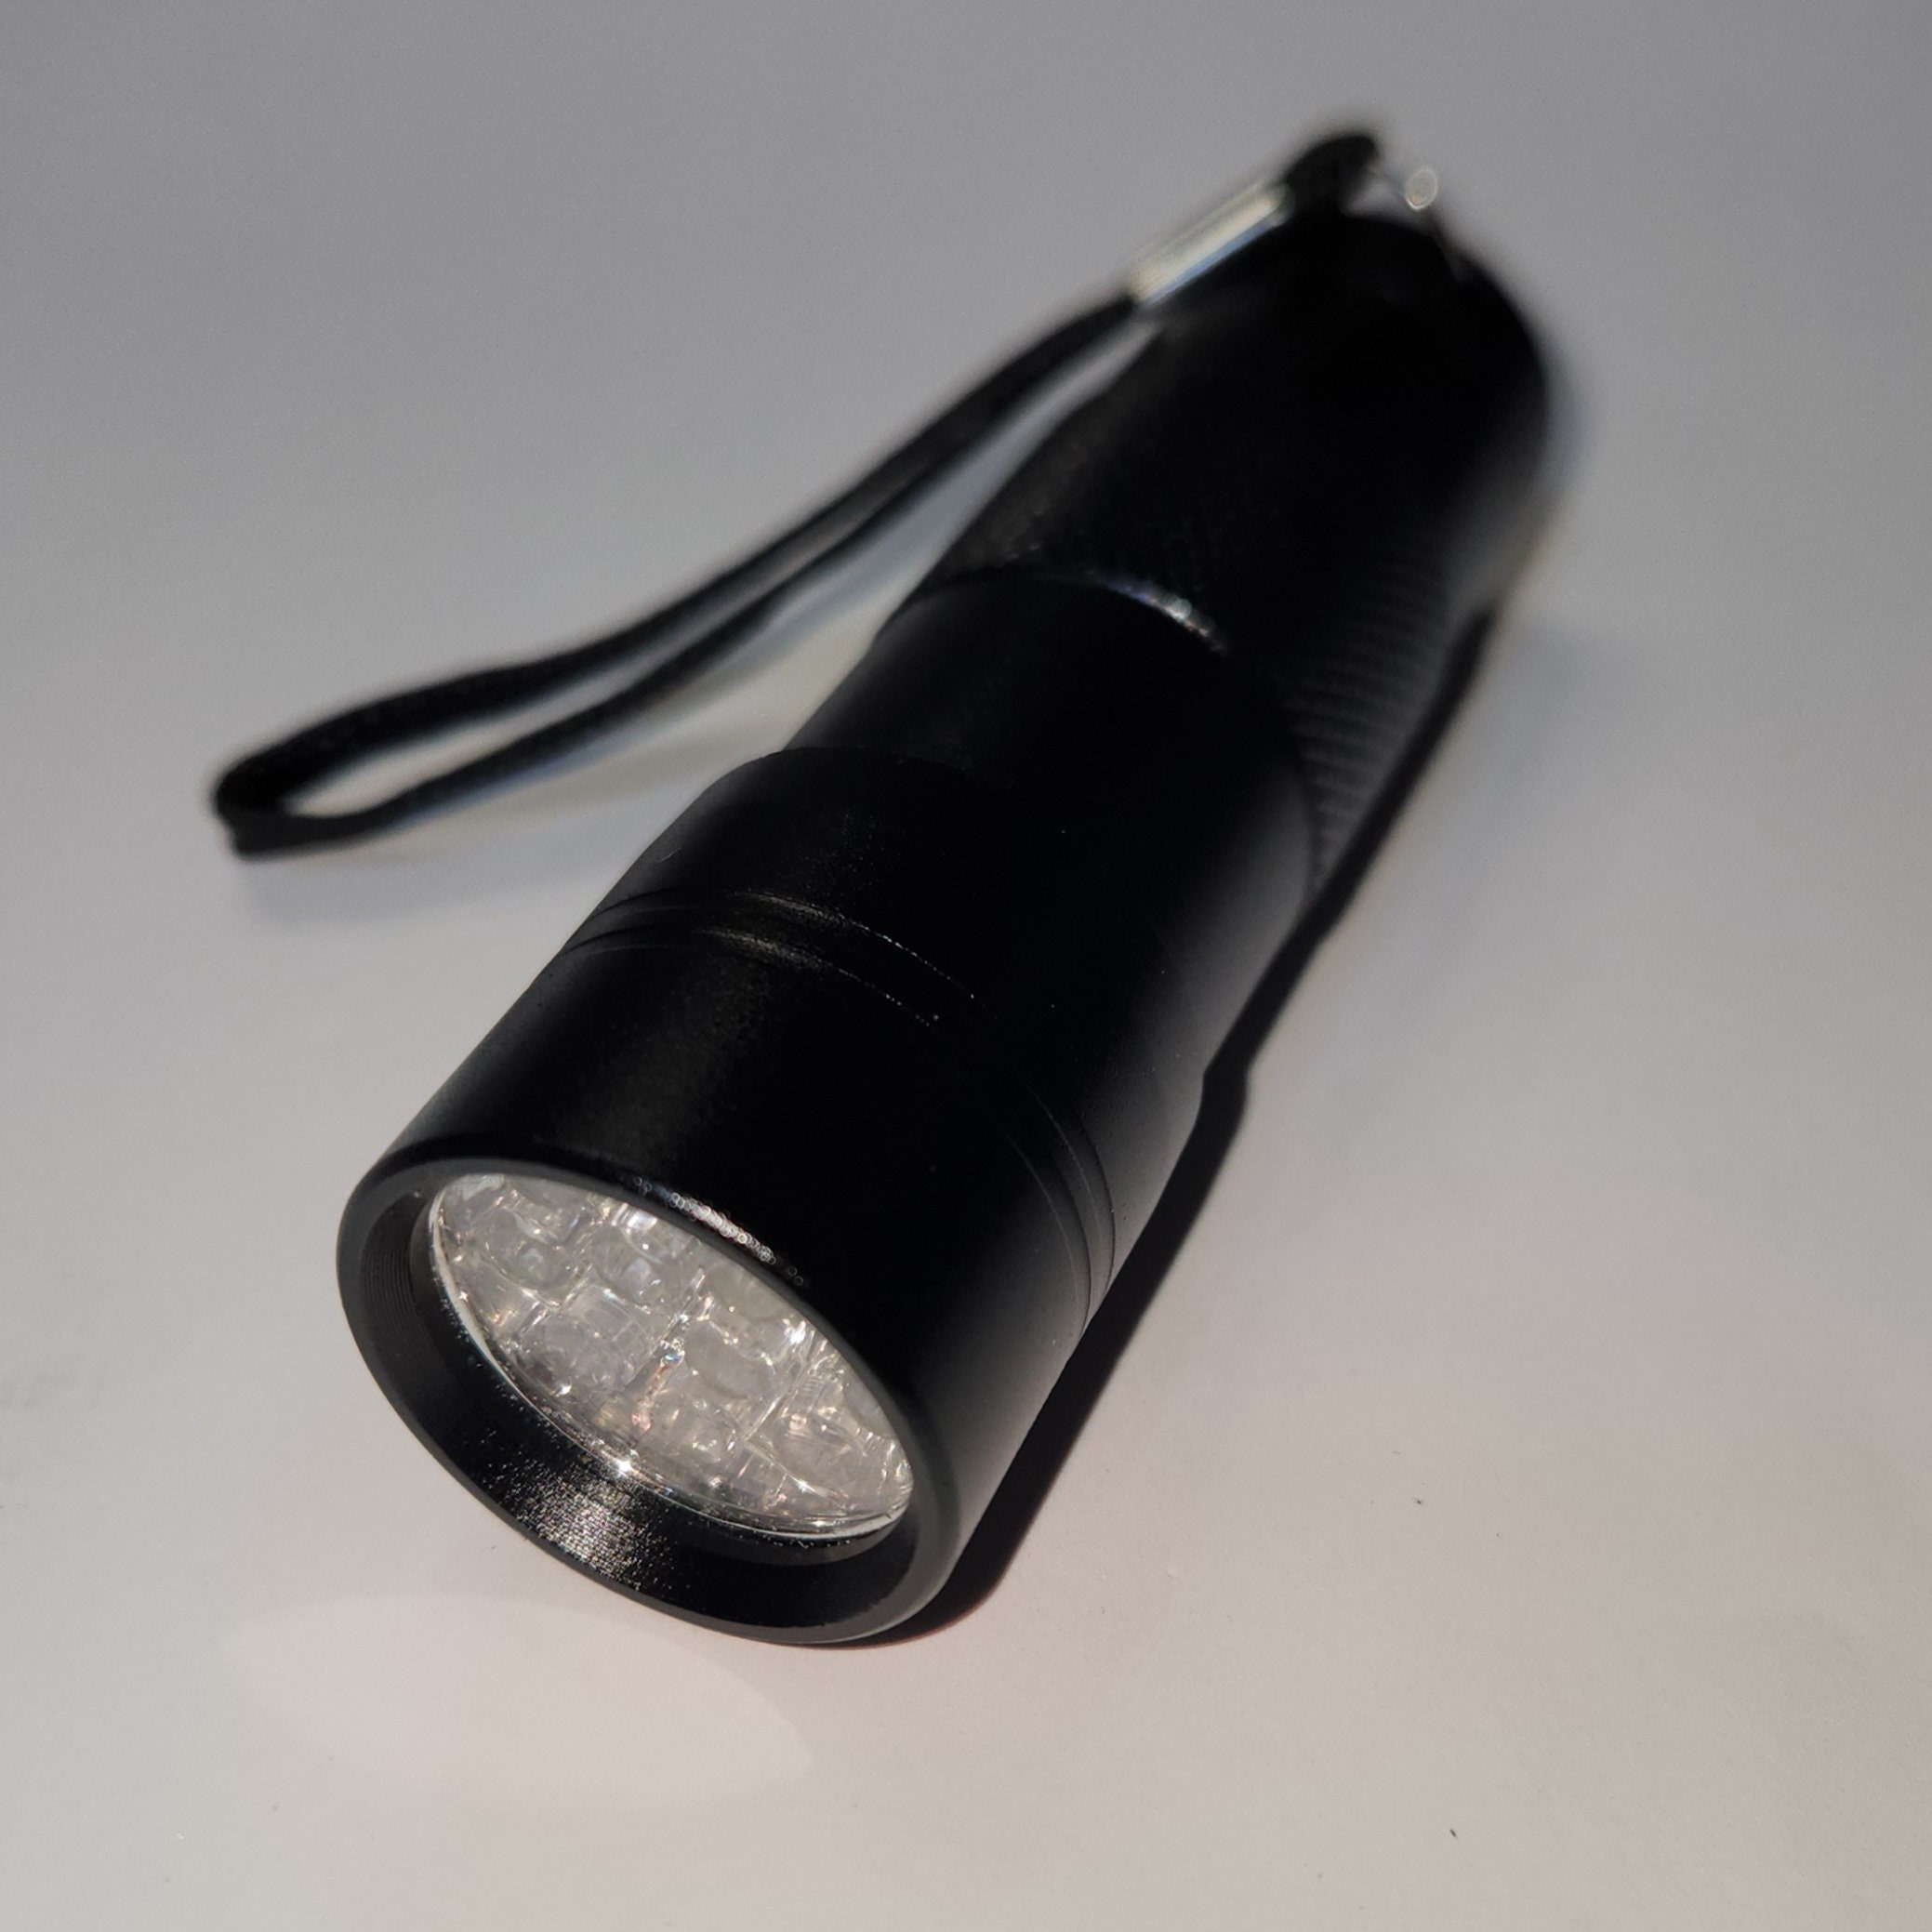 21 DEL UV - Lampe de poche portable à lumière noire ultraviolette